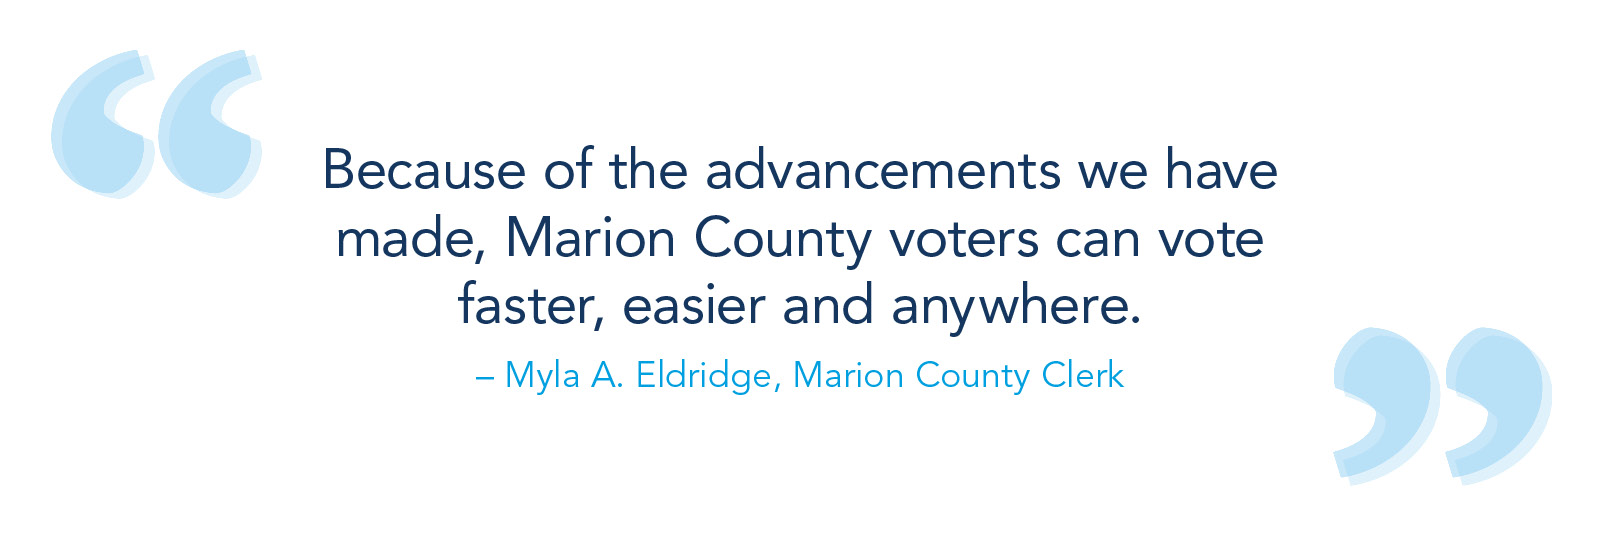 由于我们所做的进步，Marion县选民可以更快，更容易和任何地方投票。-  Myla A. Eldridge，Marion County Clerk